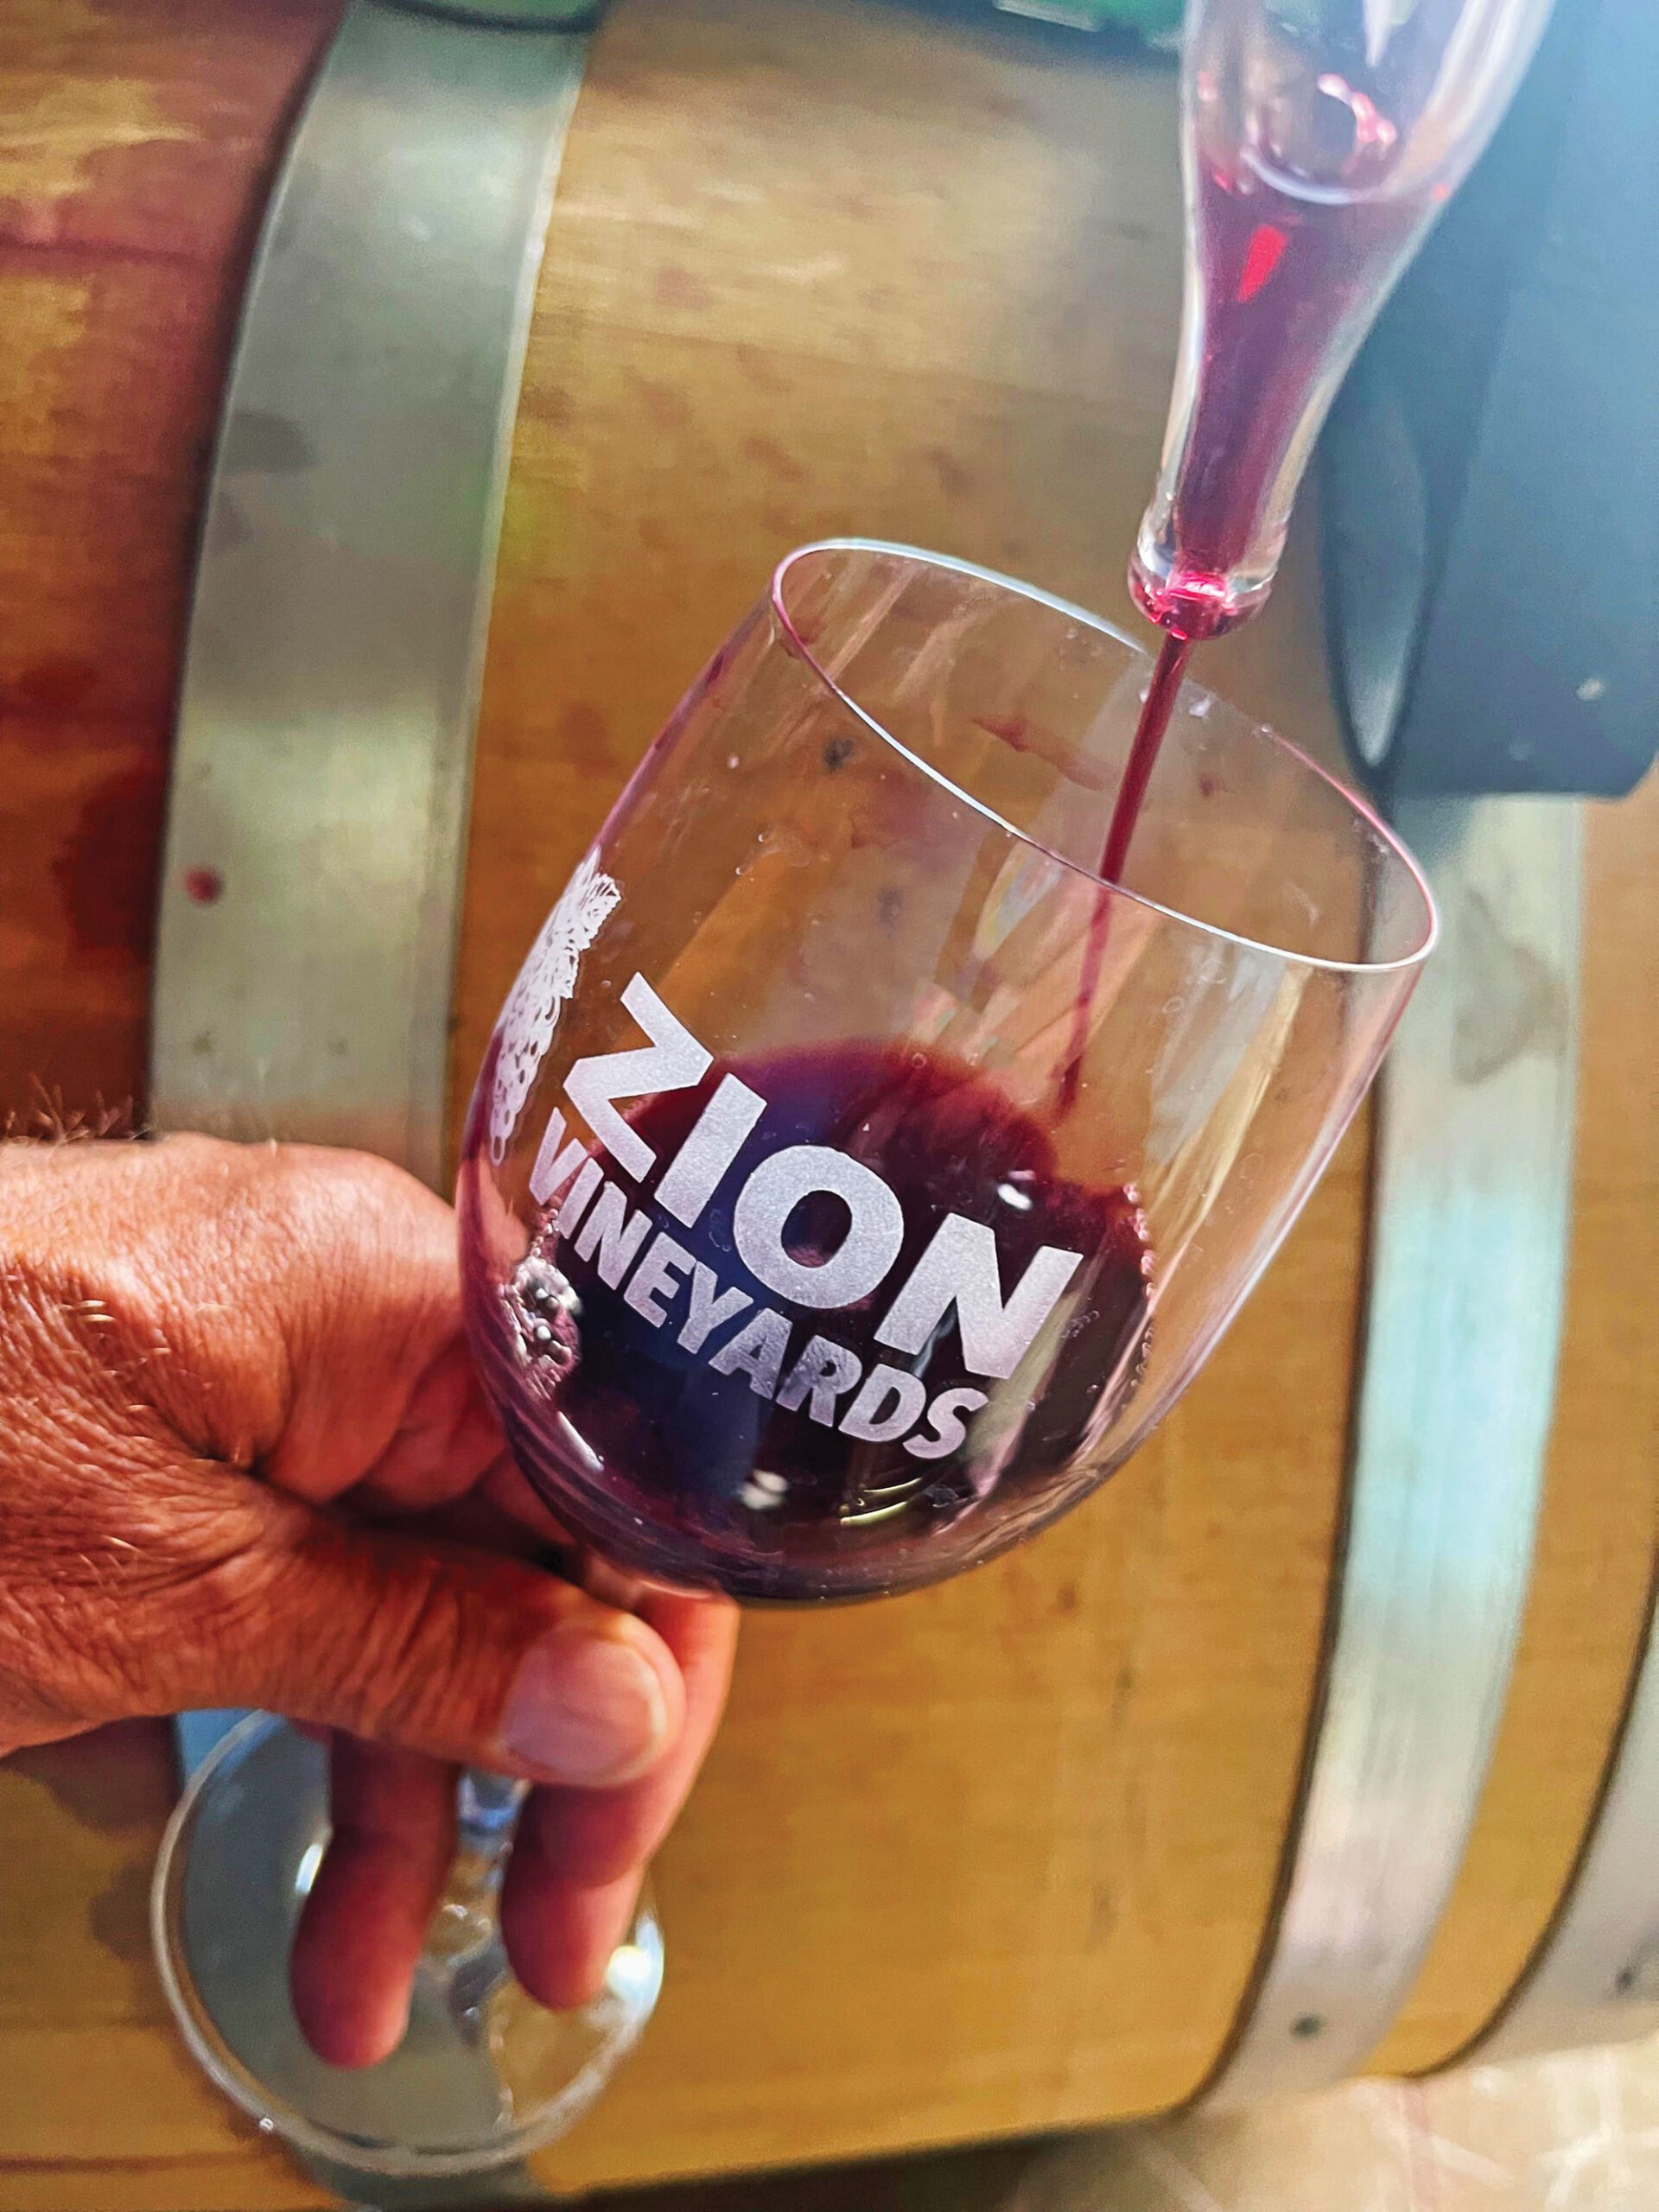 Zion Vineyards